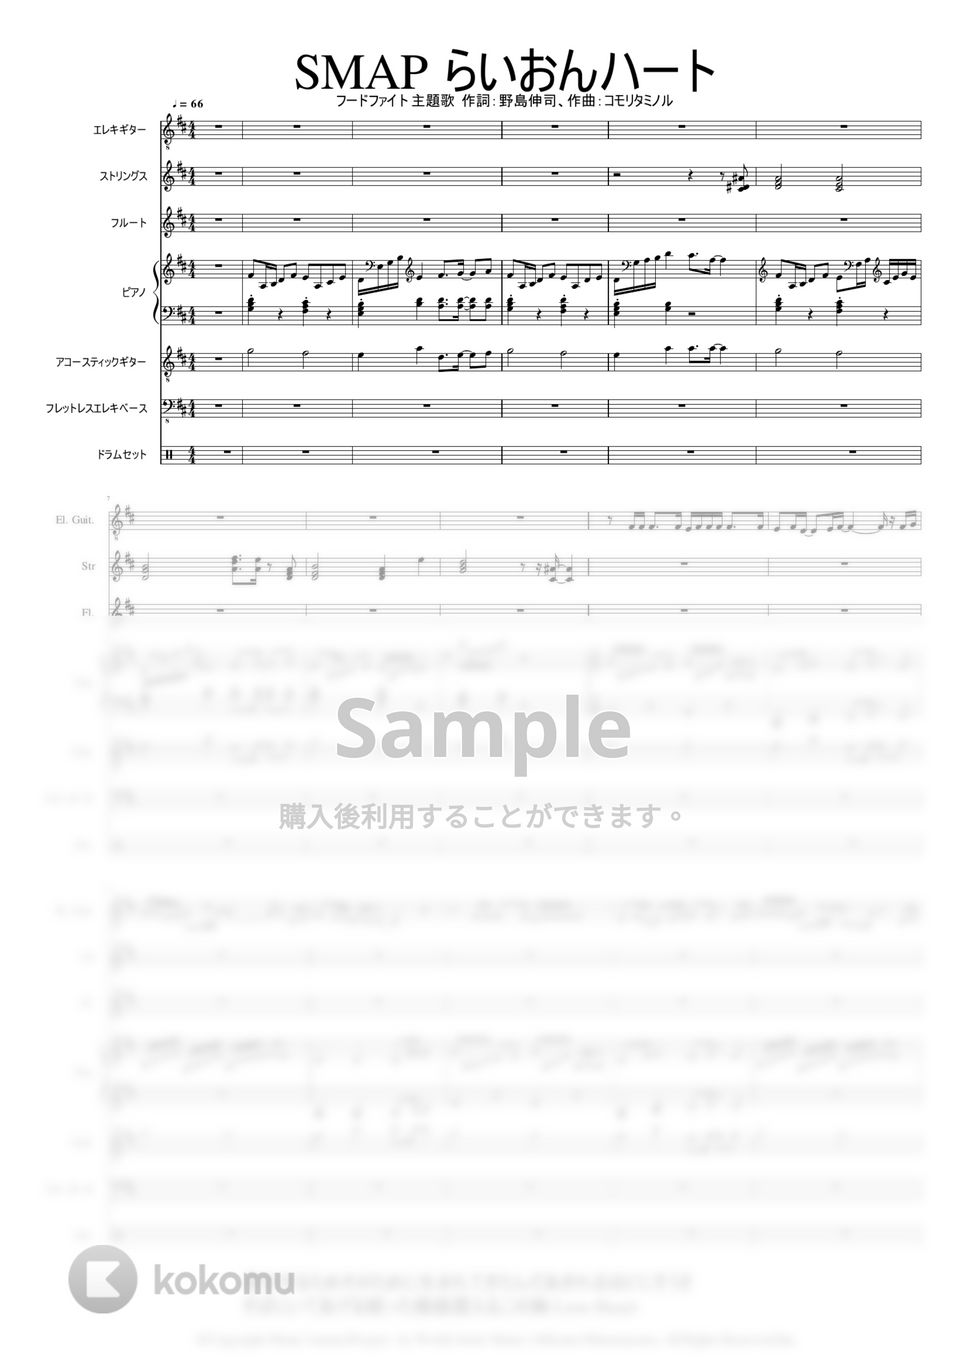 作詞:野島伸司,作曲:コモリタミノル。 - らいおんハート by Mitsuru Minamiyama